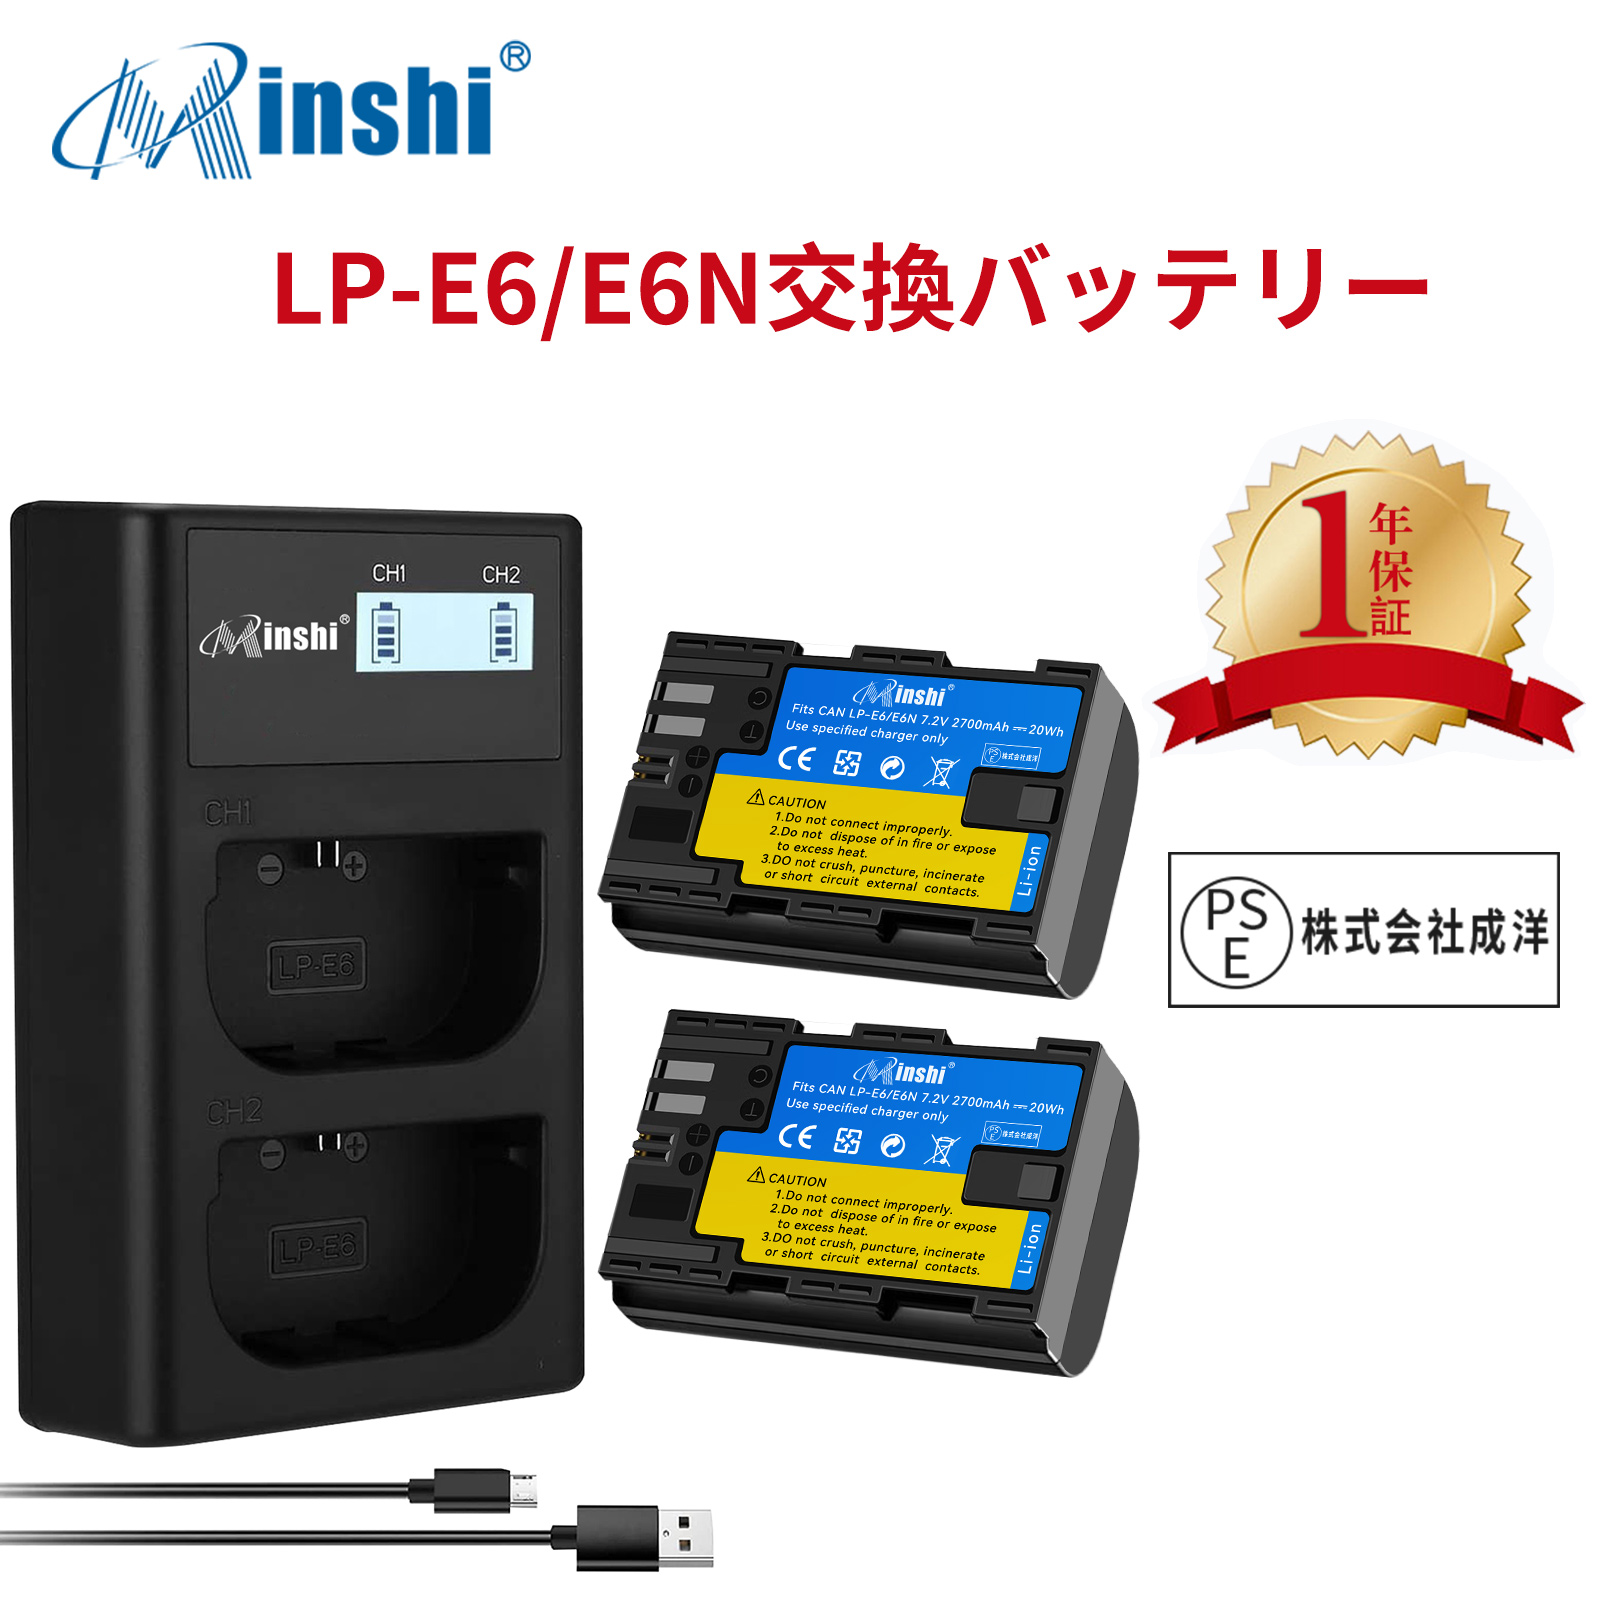 【２個セット】minshi Canon EOS 6D LP-E6 LP-E6N EOS6D CANON 80D 【2700mAh 7.2V】【互換急速USBチャージャー】 高品質LP-E6NH交換用バッテリー